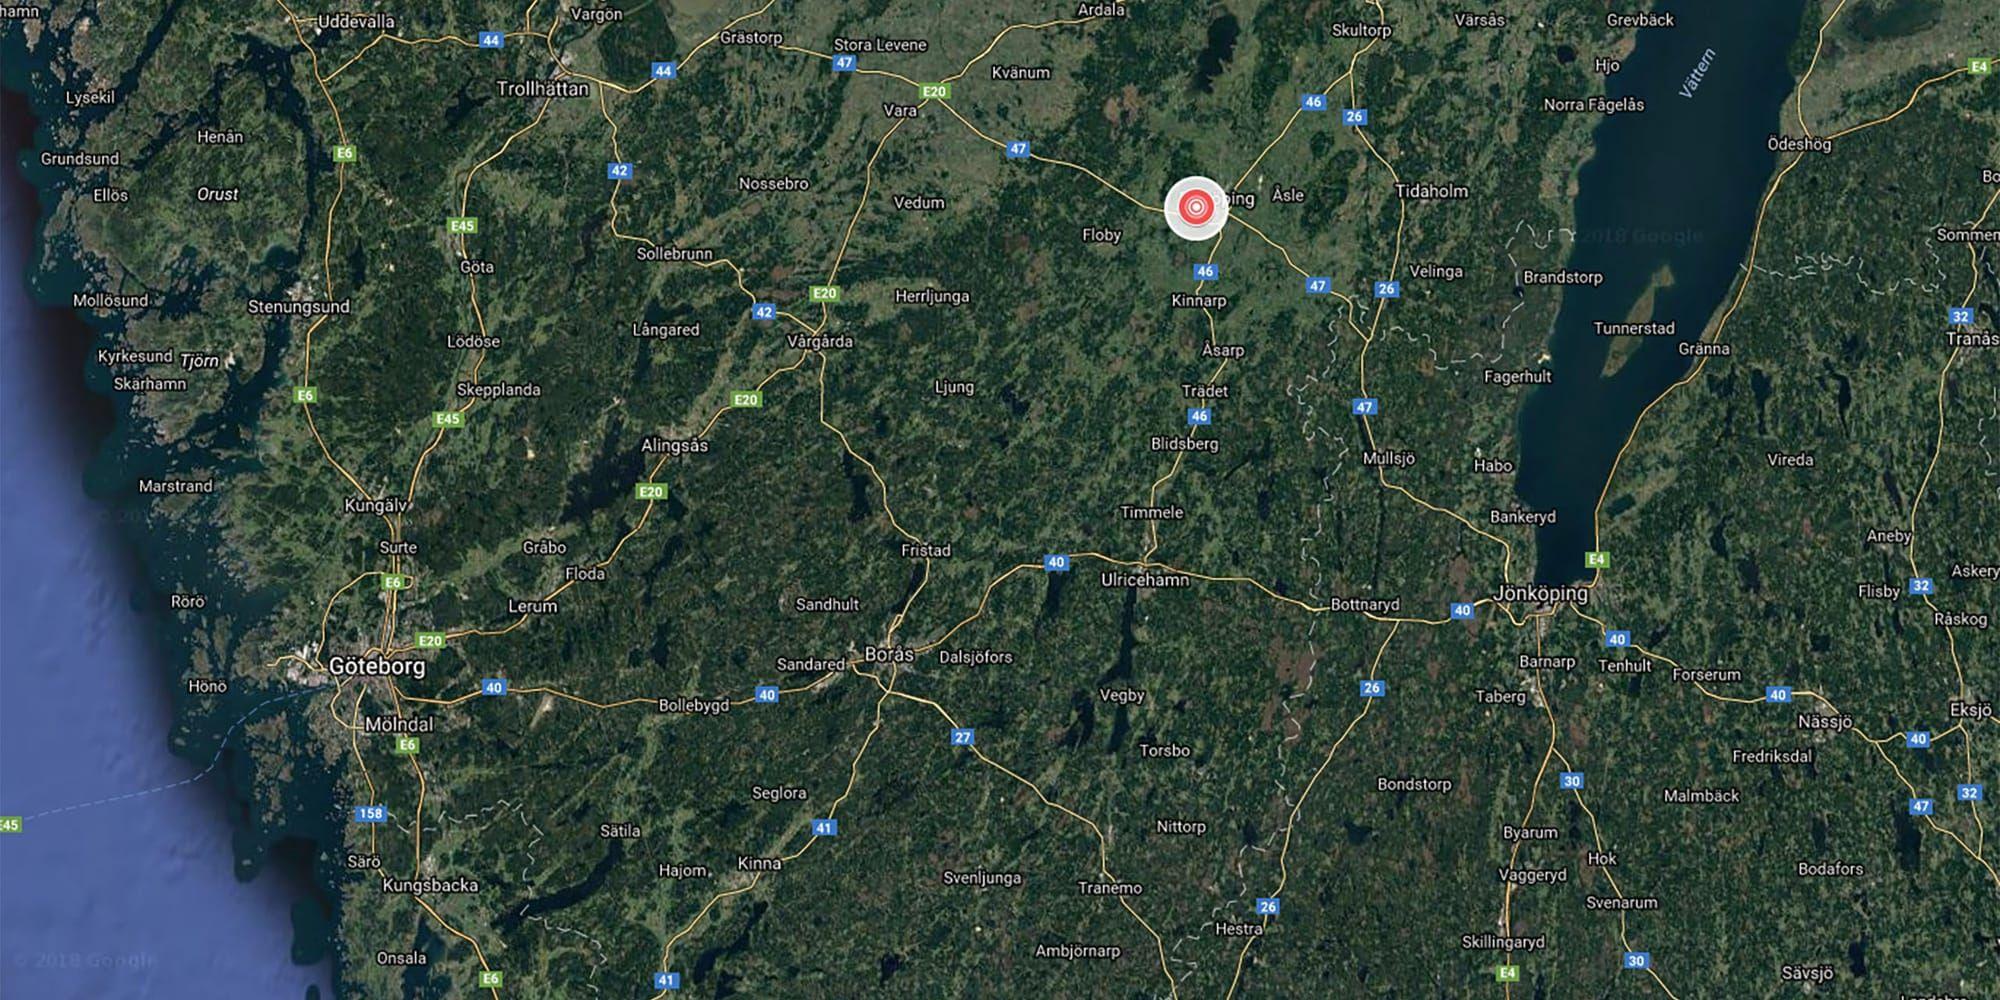 Jordskalvets epicentrum ligger cirka tre kilometer väster om Falköping. Källa: snsn.se